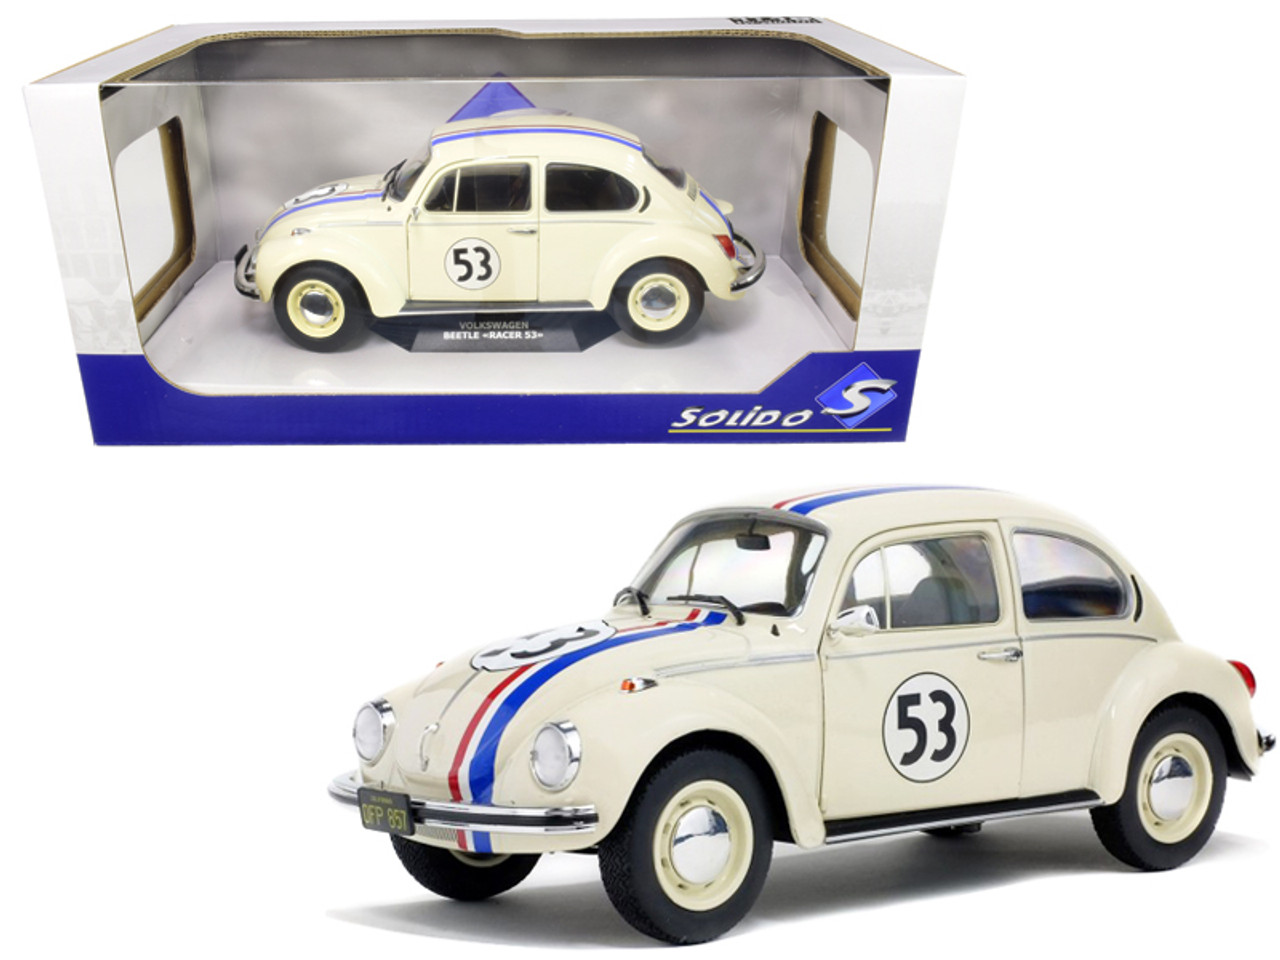 1/18 Solido Volkswagen Beetle Racing #53 Cream Diecast Car Model